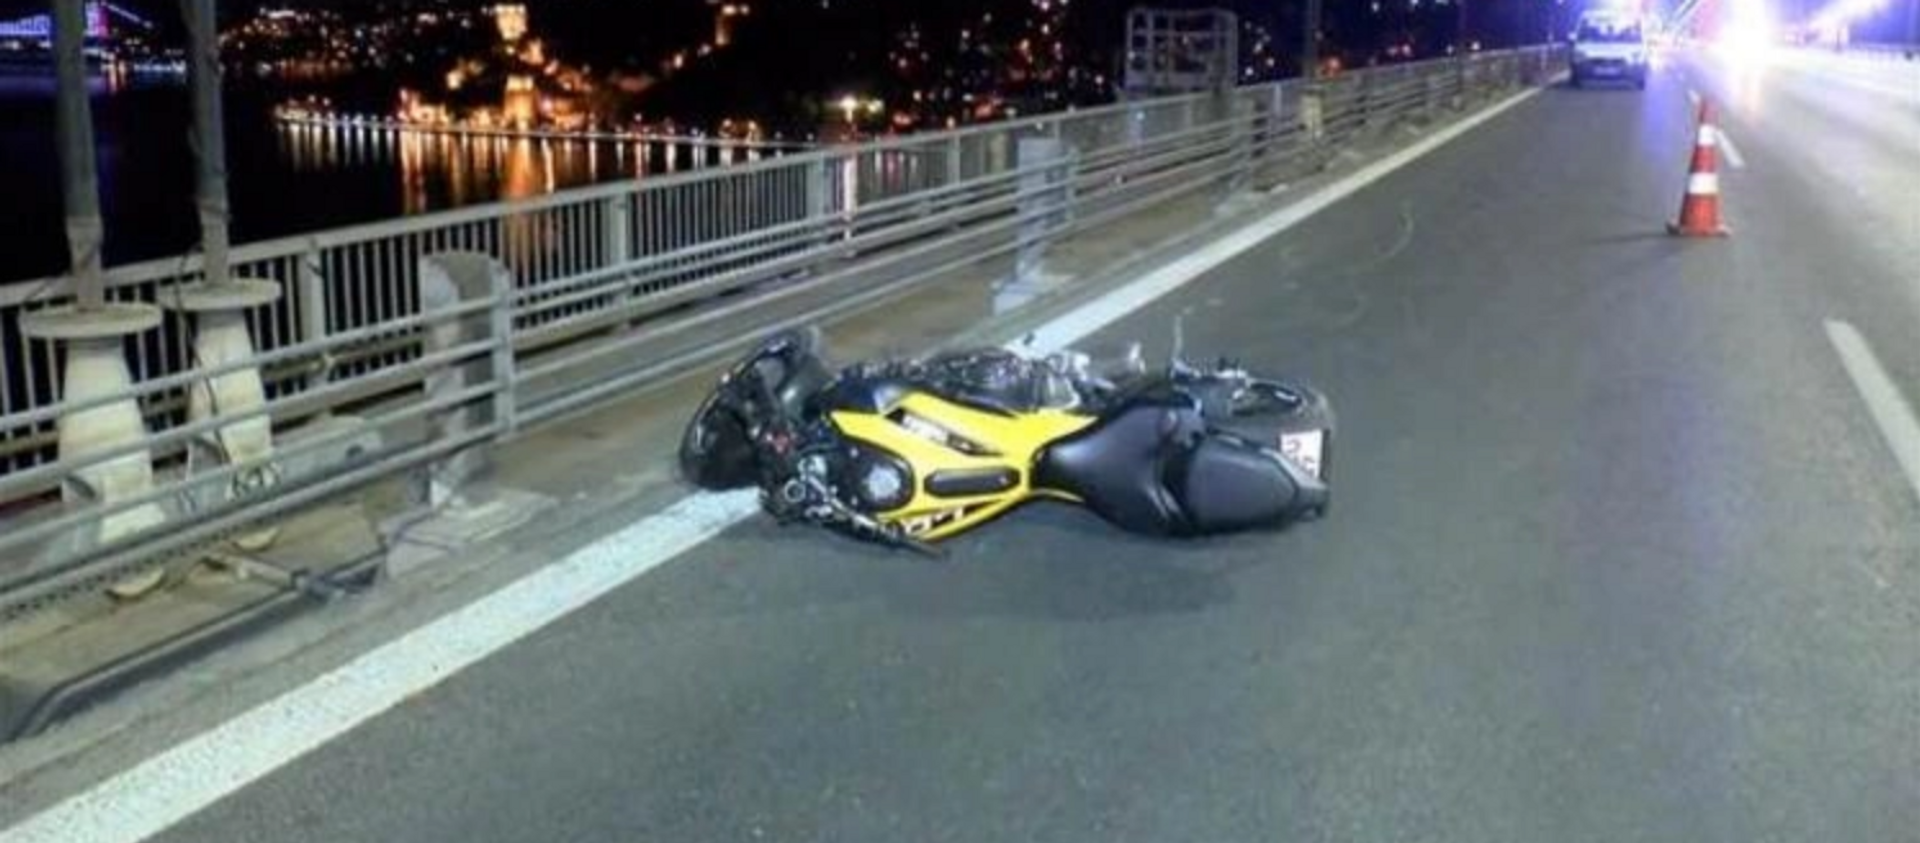 FSM Köprüsü'nde motosikletin ön tekerini kaldırarak gitmeye çalışan sürücü hayatını kaybetti - Sputnik Türkiye, 1920, 10.05.2021